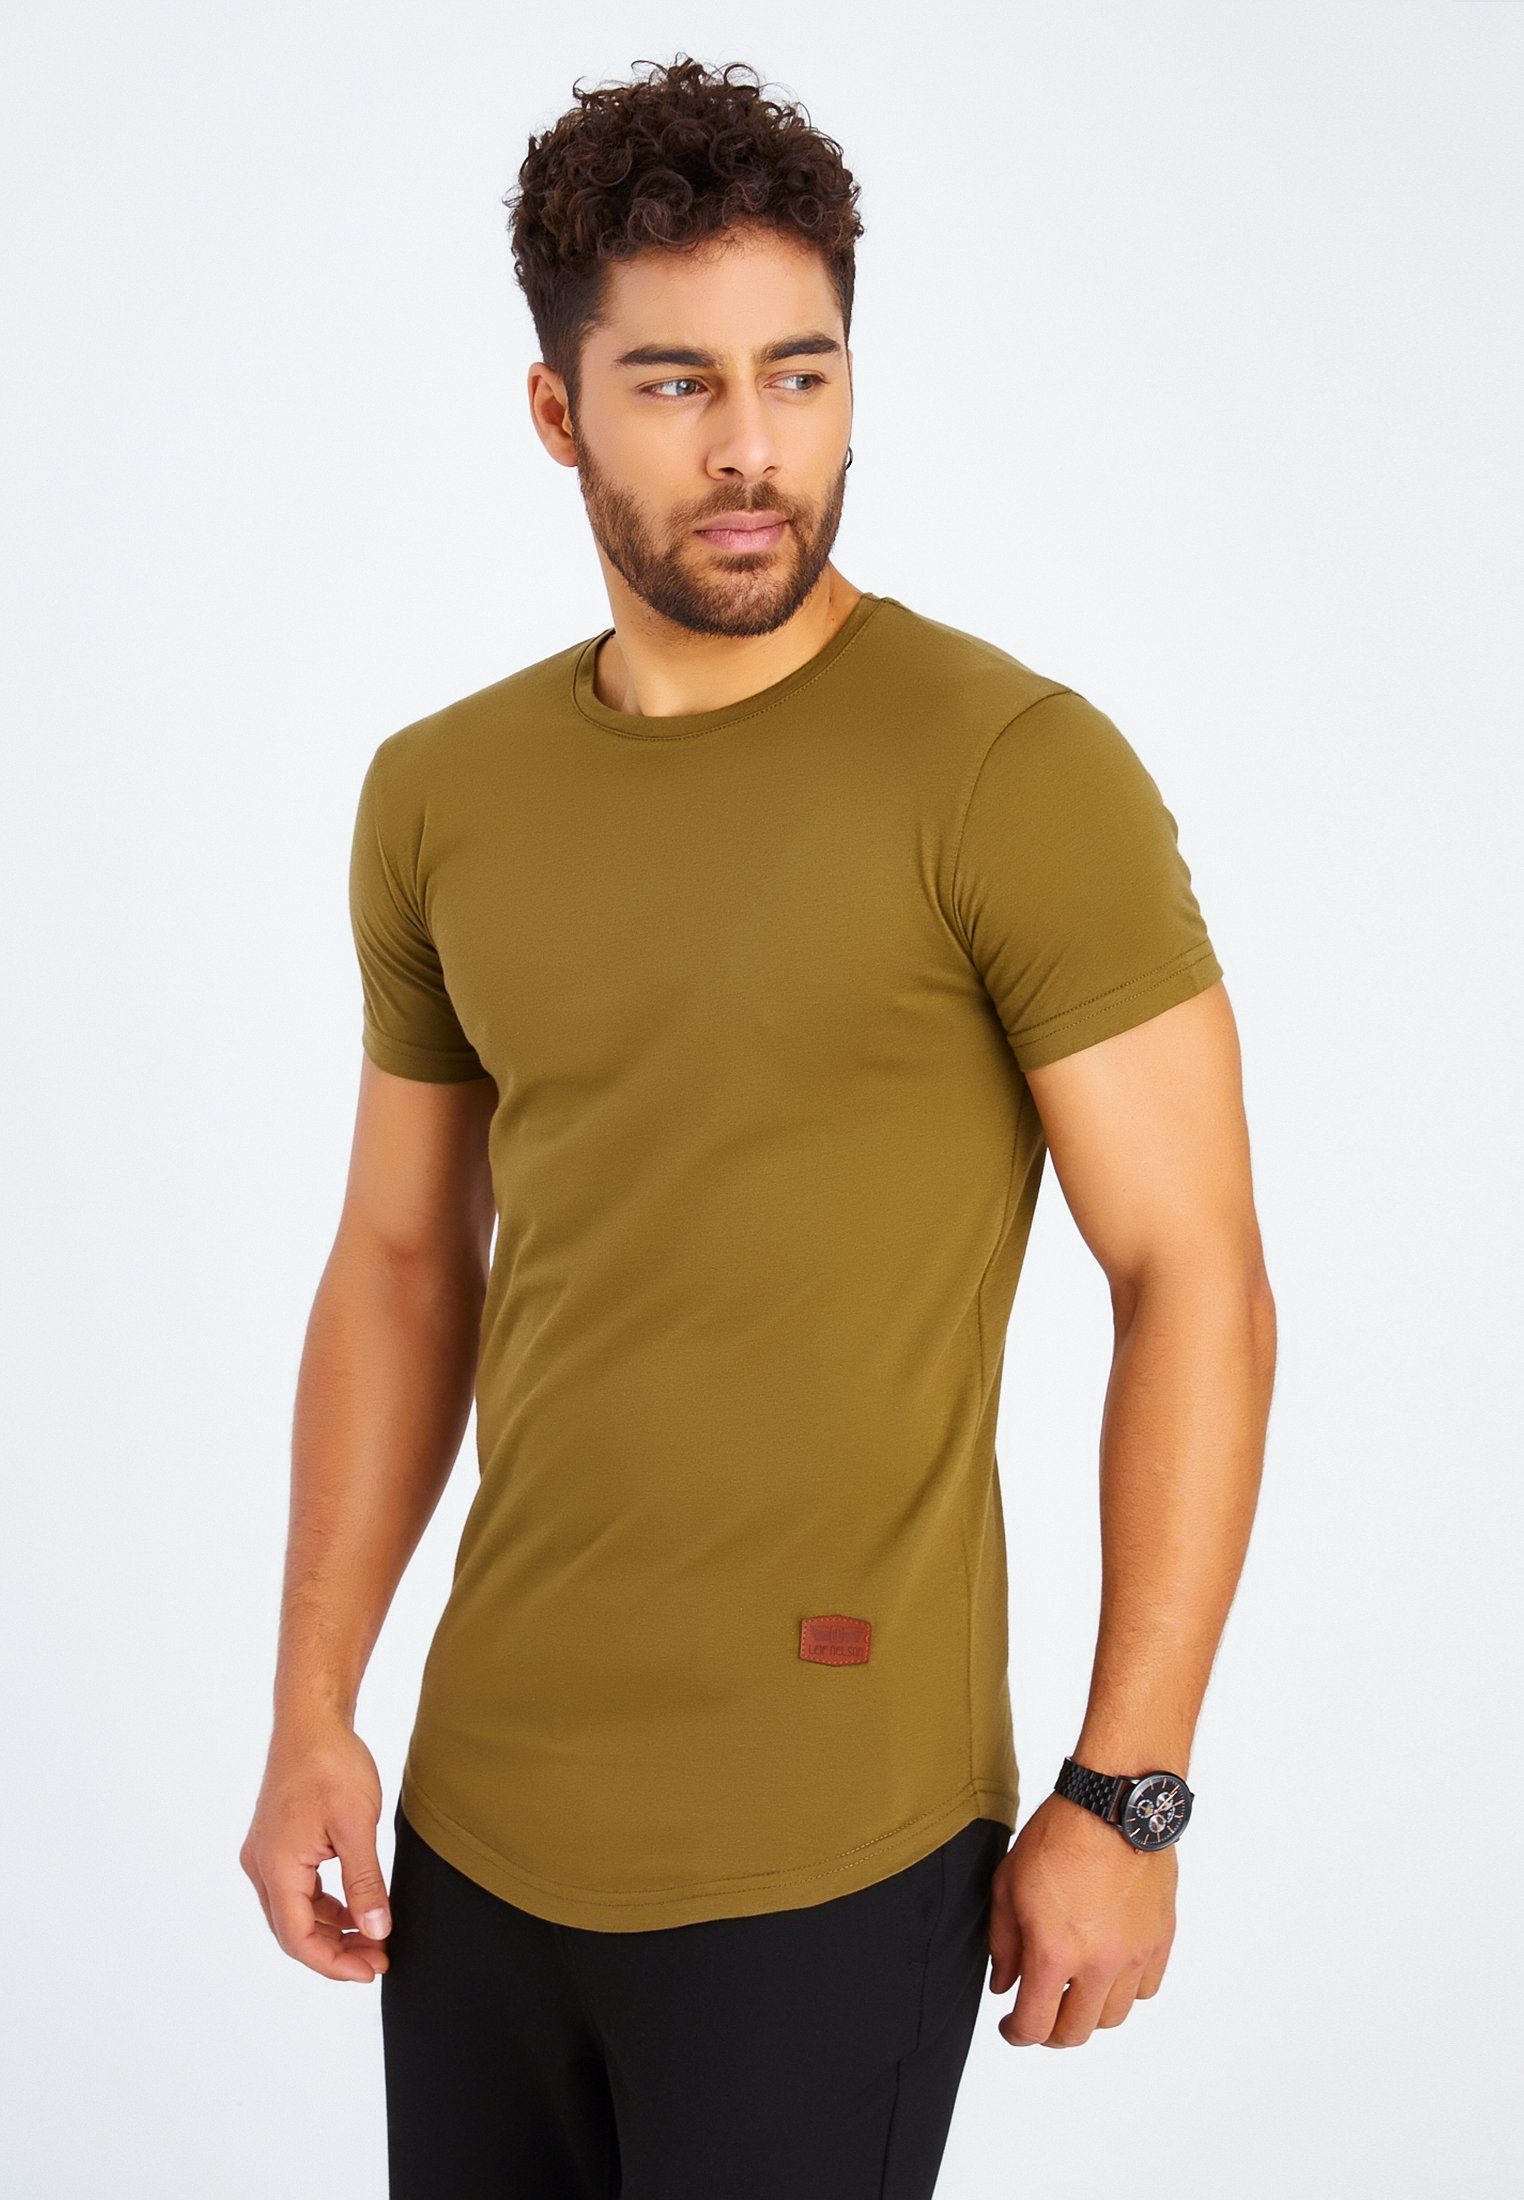 Leif Nelson T-Shirt Herren T-Shirt Rundhals khaki LN-8294